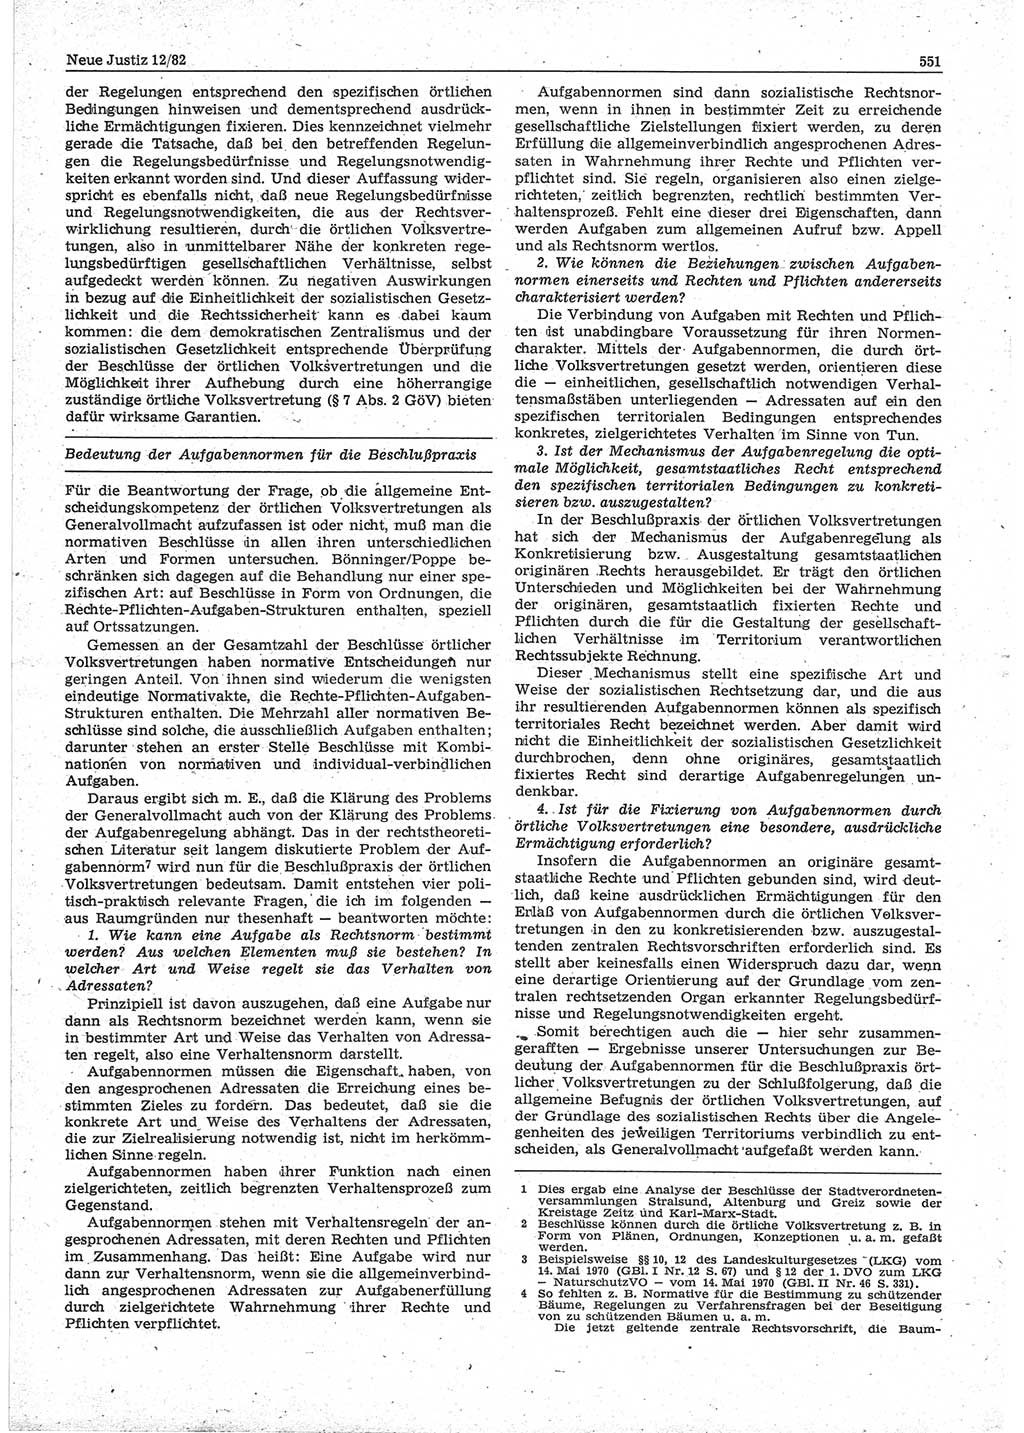 Neue Justiz (NJ), Zeitschrift für sozialistisches Recht und Gesetzlichkeit [Deutsche Demokratische Republik (DDR)], 36. Jahrgang 1982, Seite 551 (NJ DDR 1982, S. 551)